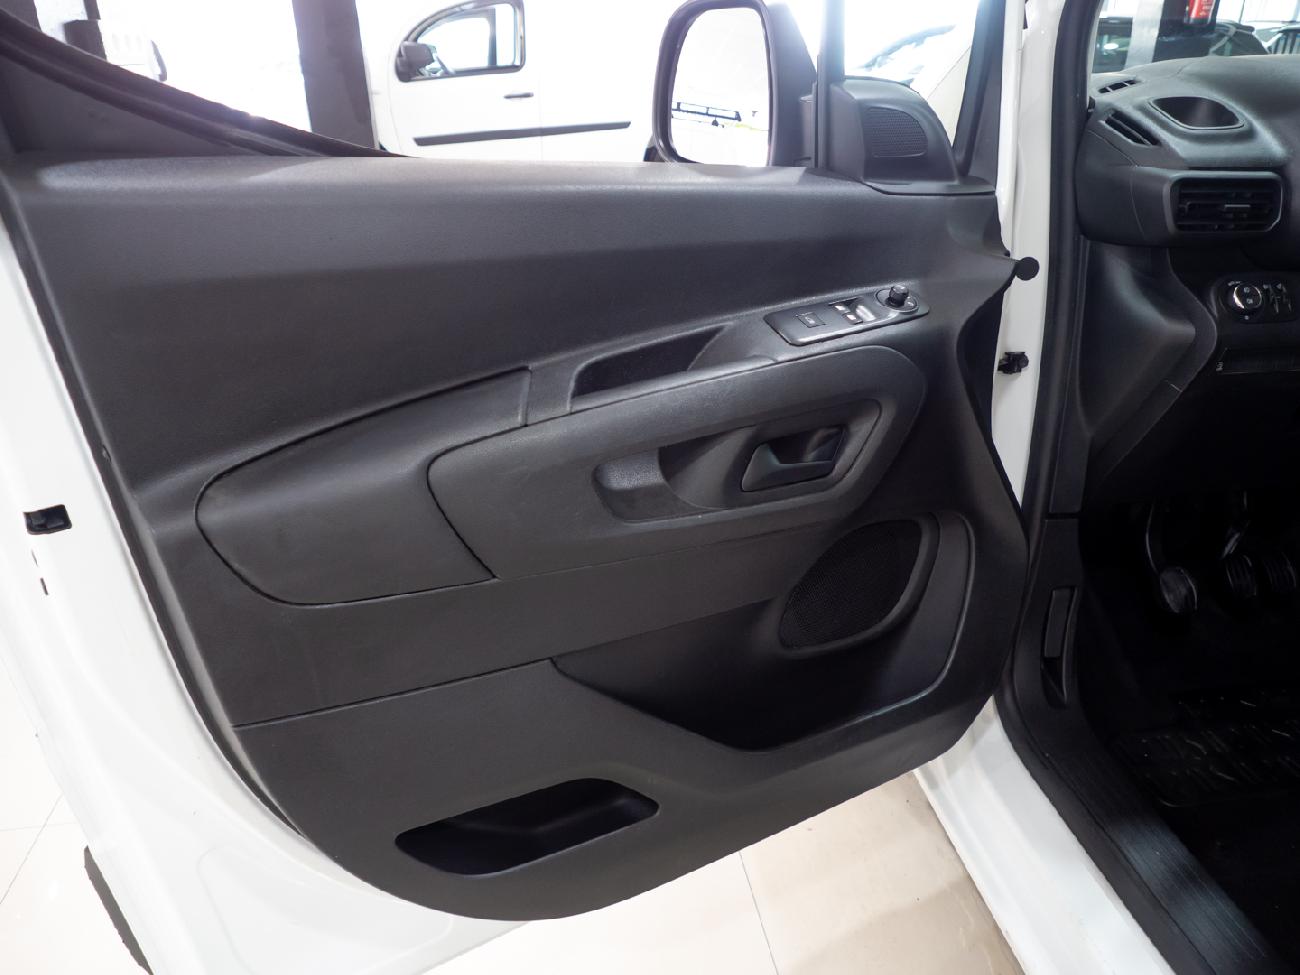 2019 Opel Combo Combo 1.6 TD 55kW (75CV) Express L H1 650kg coche de segunda mano